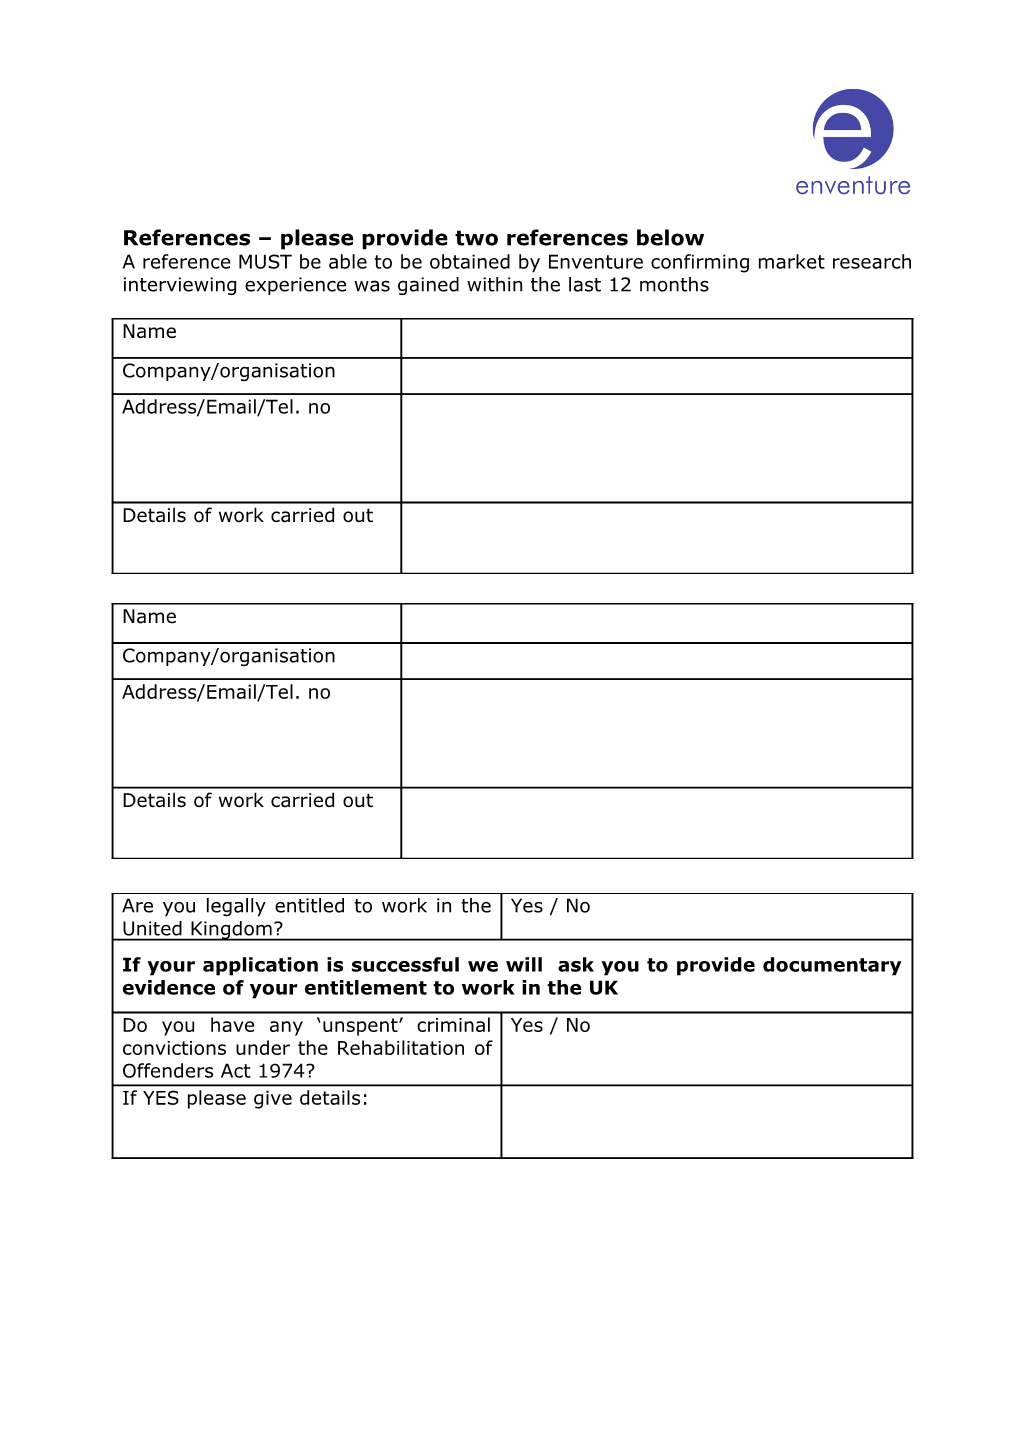 Fieldworker/Research Registration Form